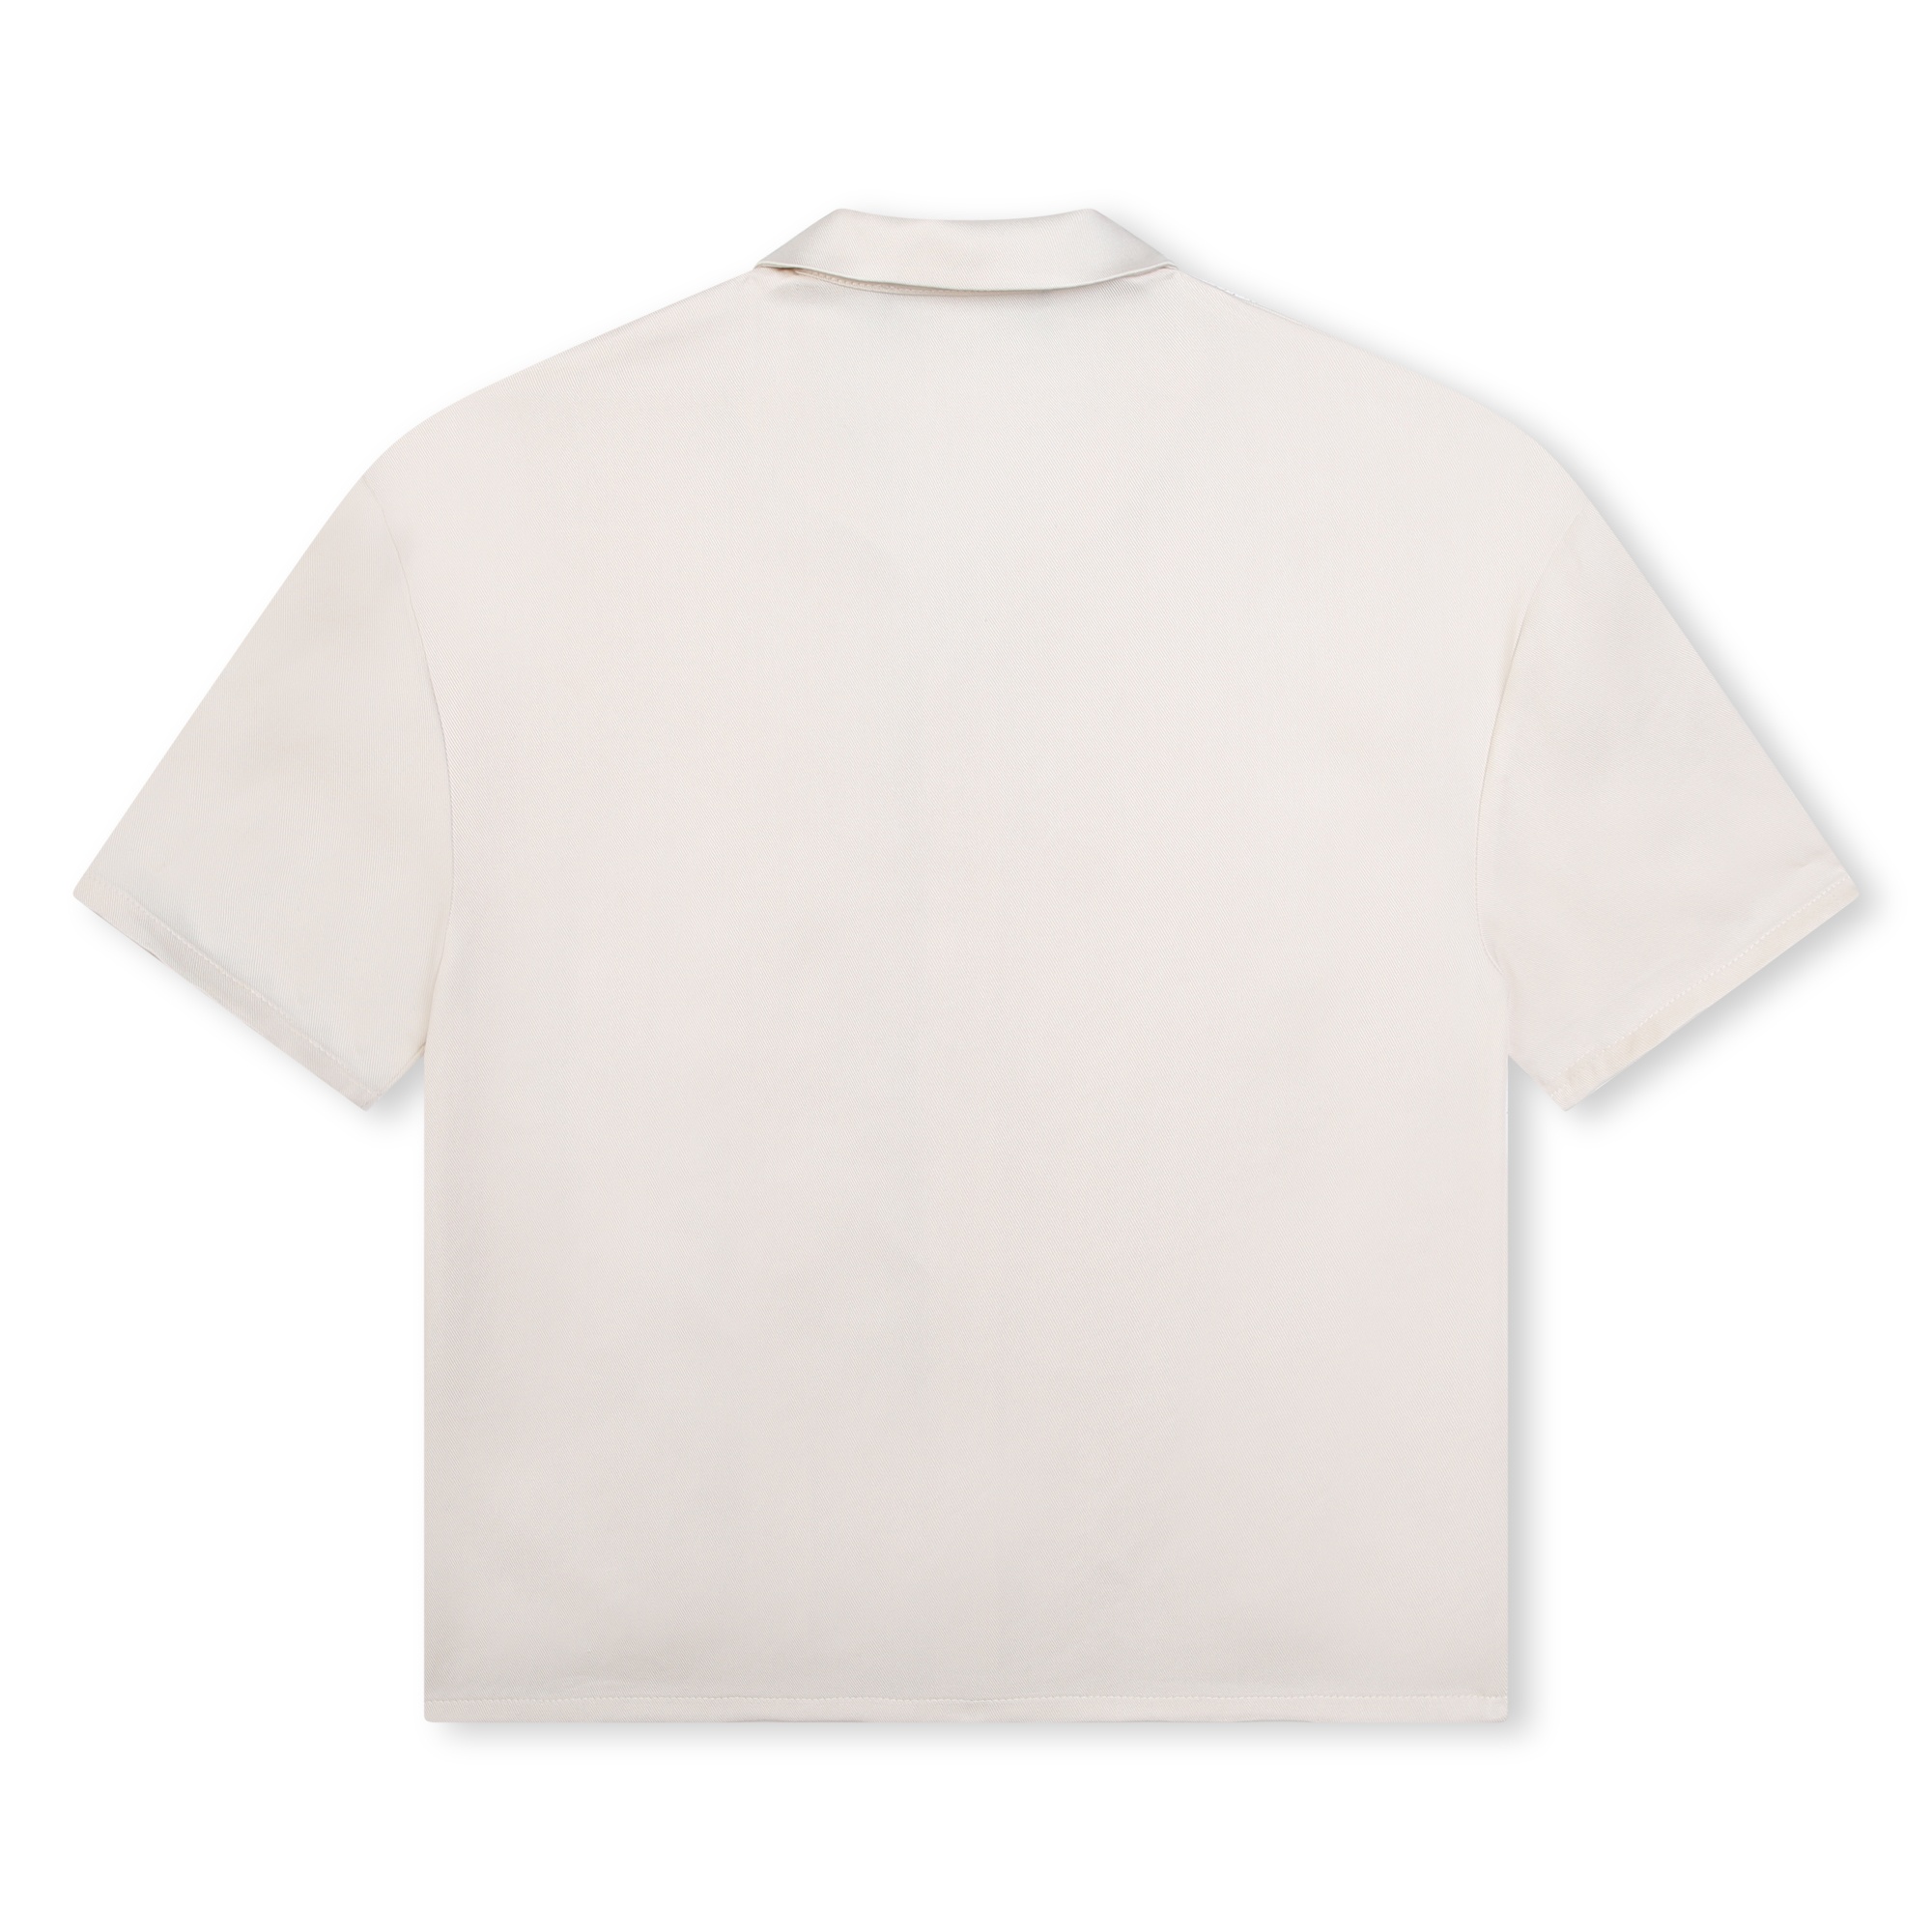 Short-sleeved shirt KARL LAGERFELD KIDS for BOY